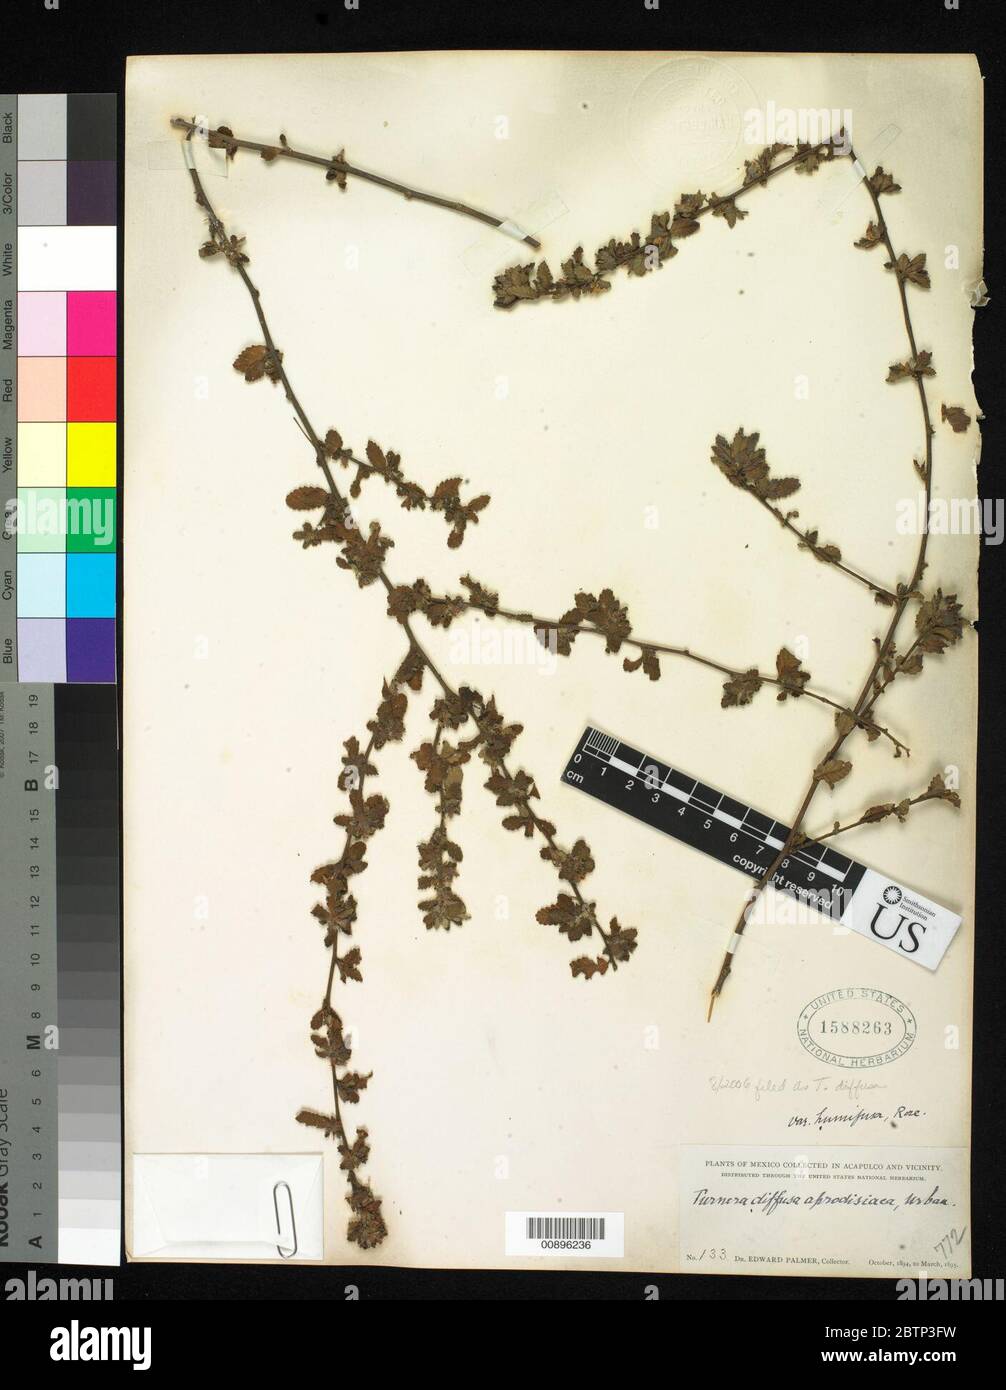 Turnera diffusa Willd ex Schult. Stock Photo